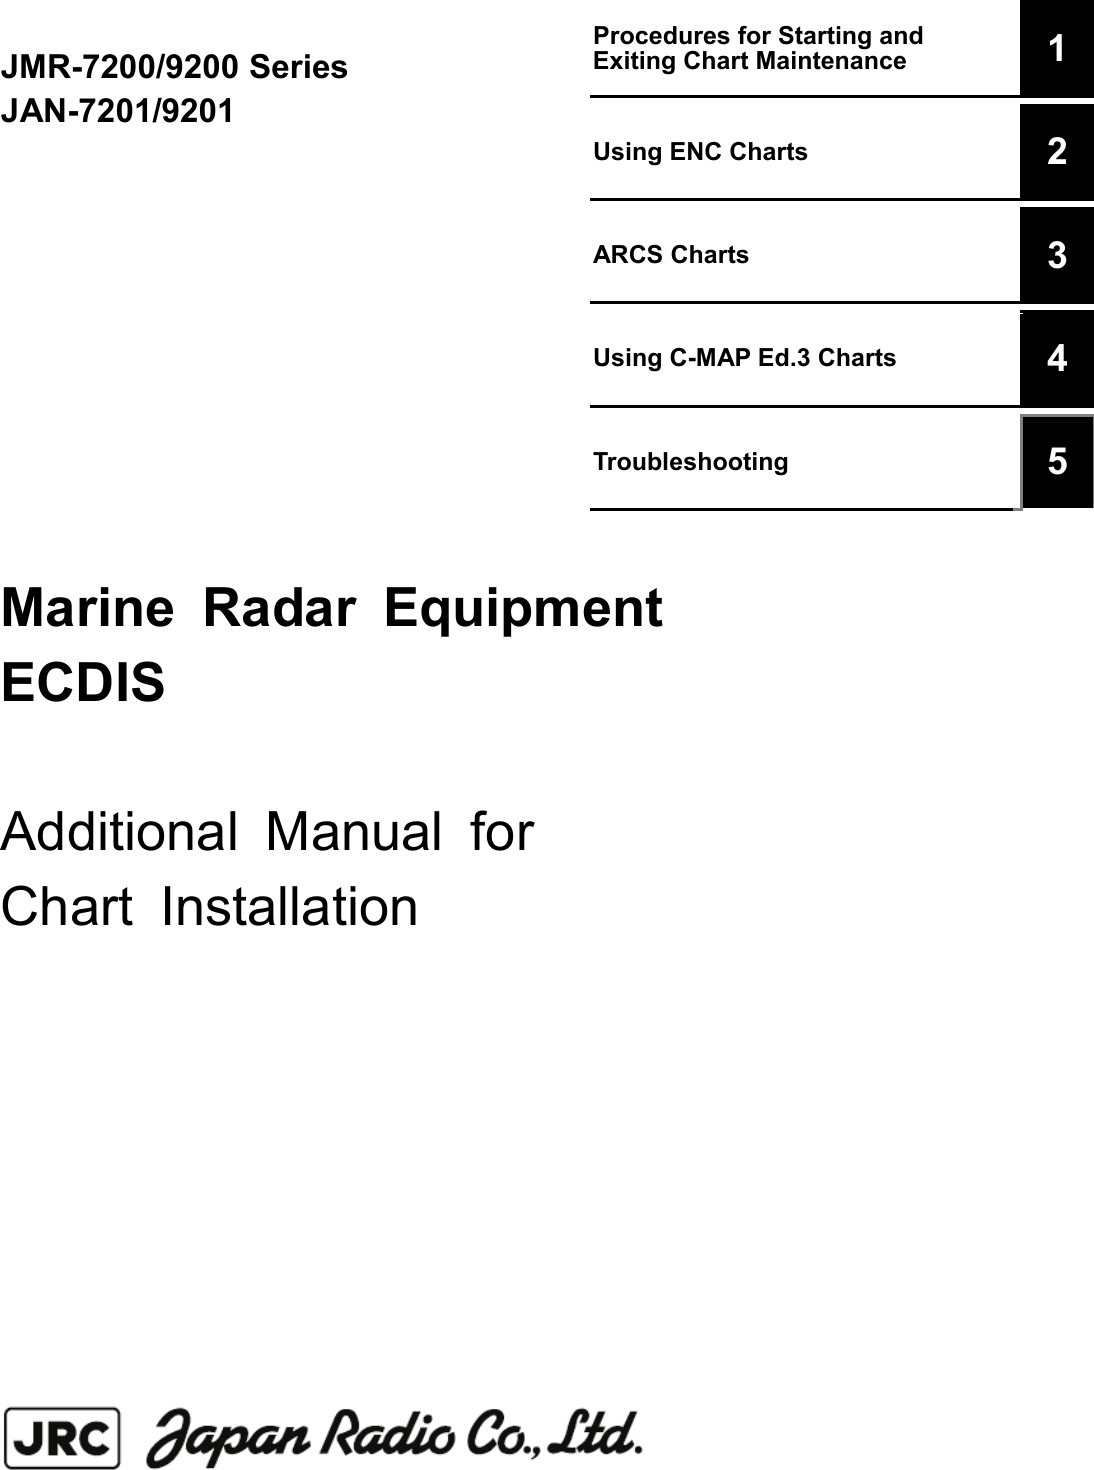 Jrc Ecdis 9201 User Manual Pdf